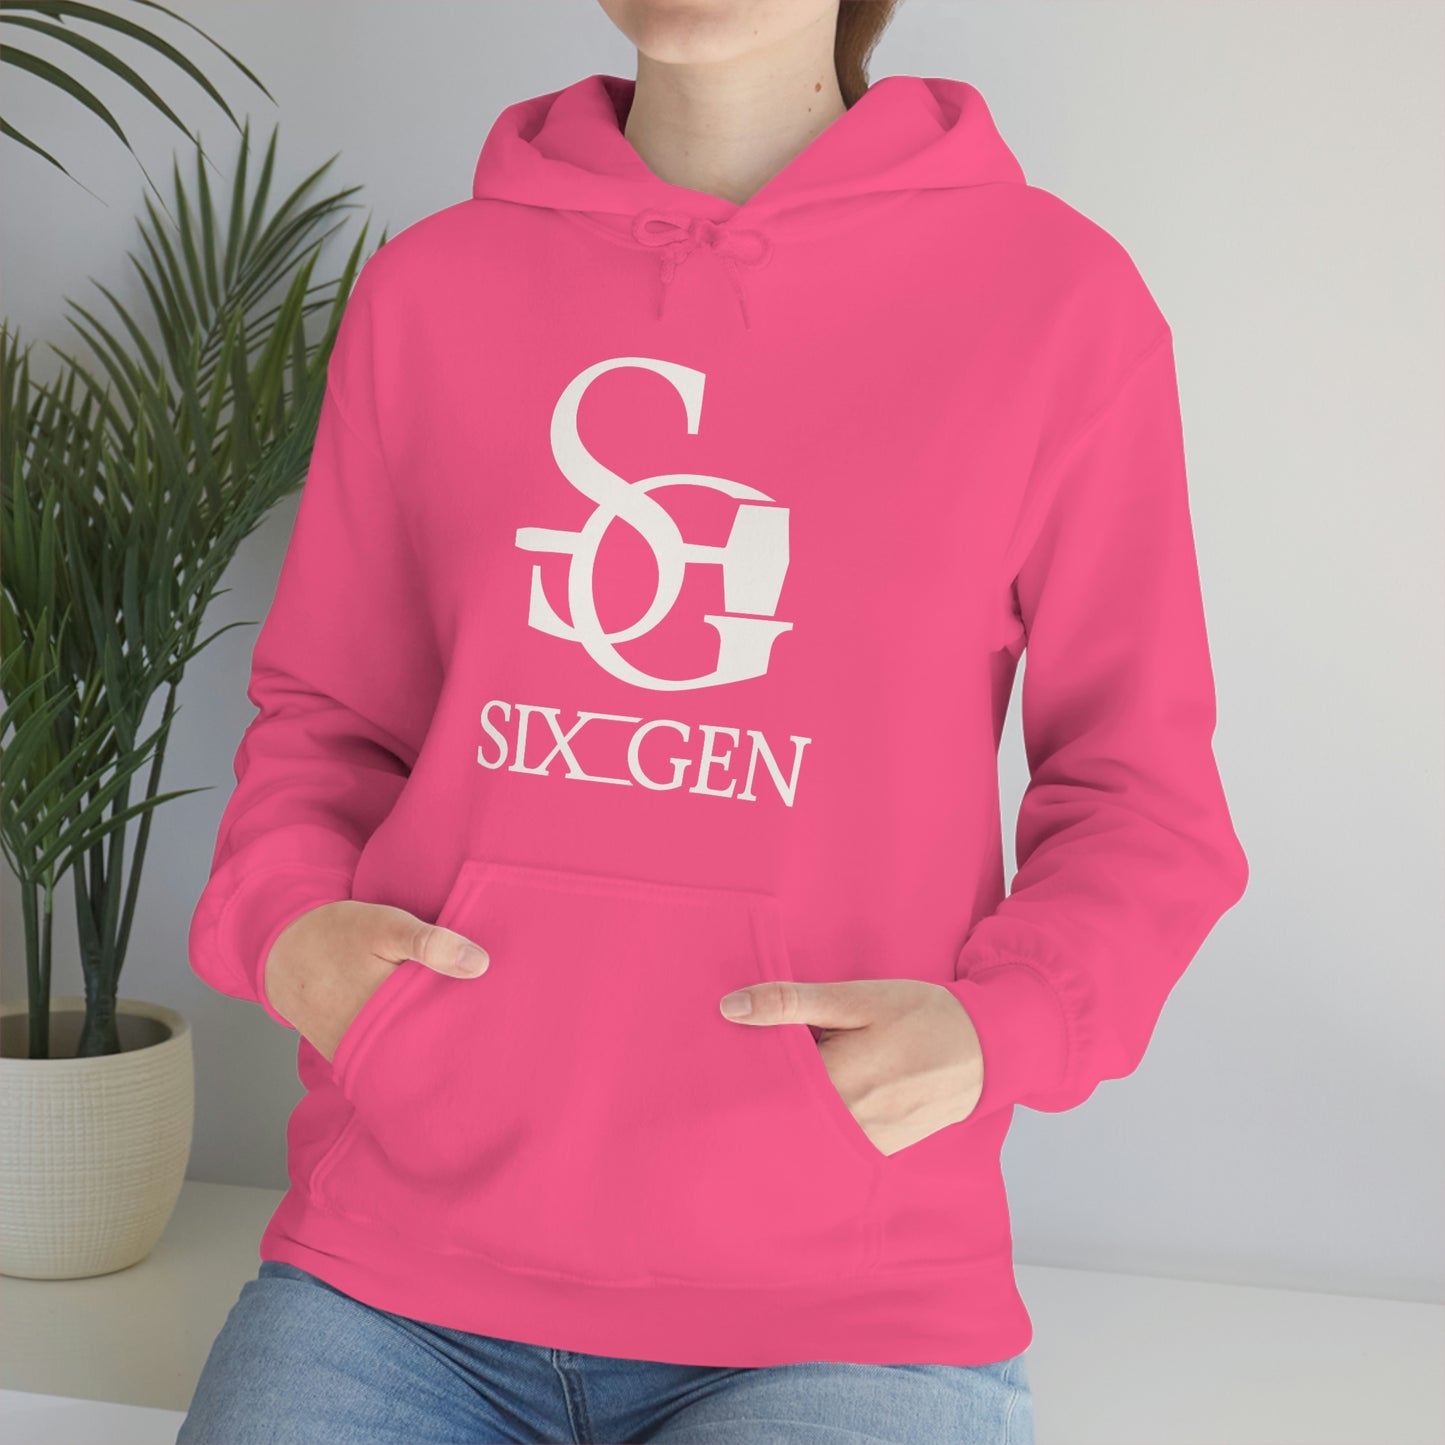 Six-Gen Forge logo Hooded Sweatshirt